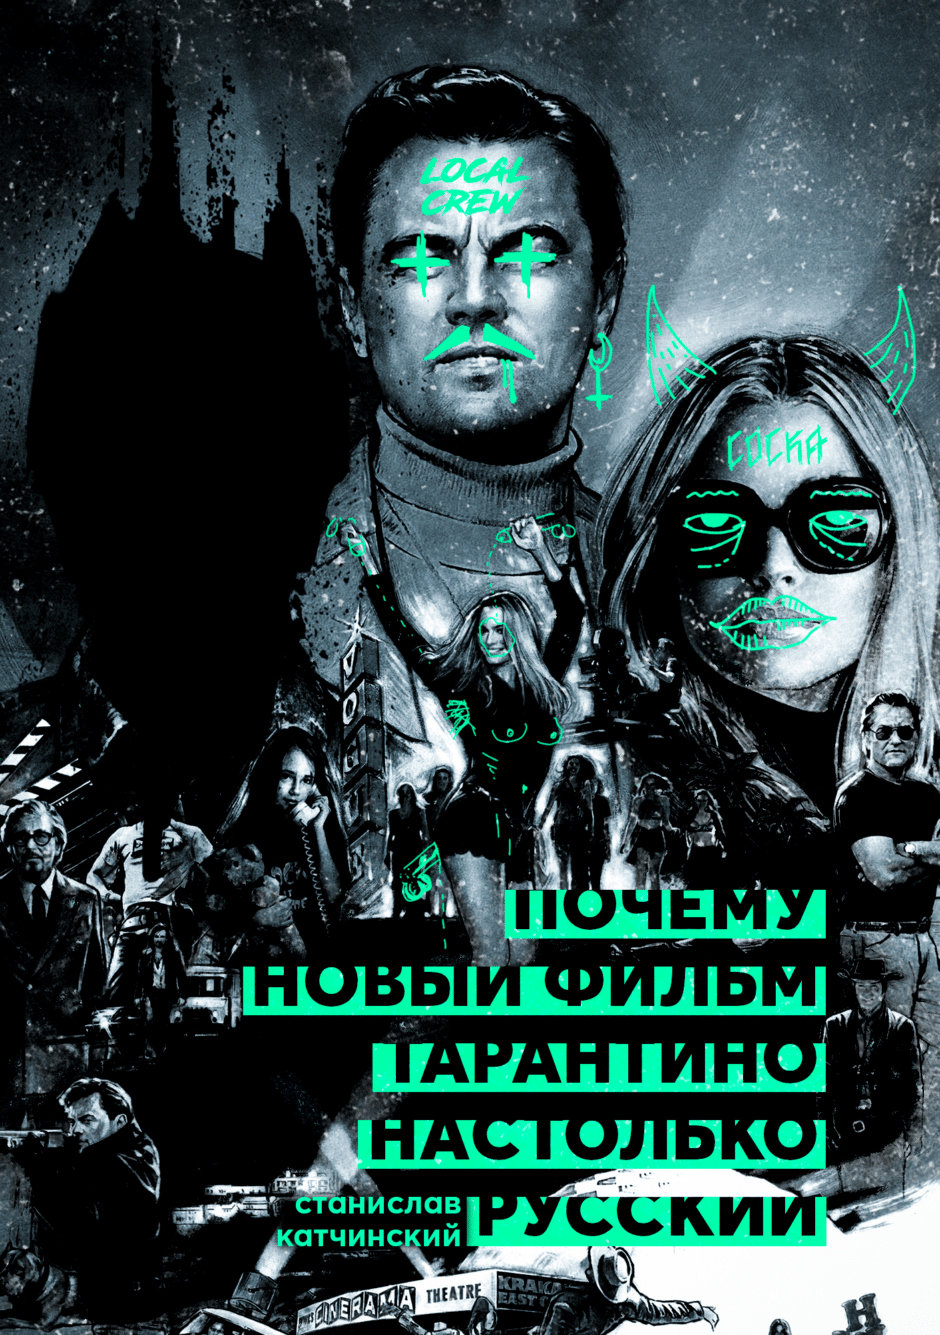 Однажды... в Голливуде — почему новый фильм Тарантино настолько русский?